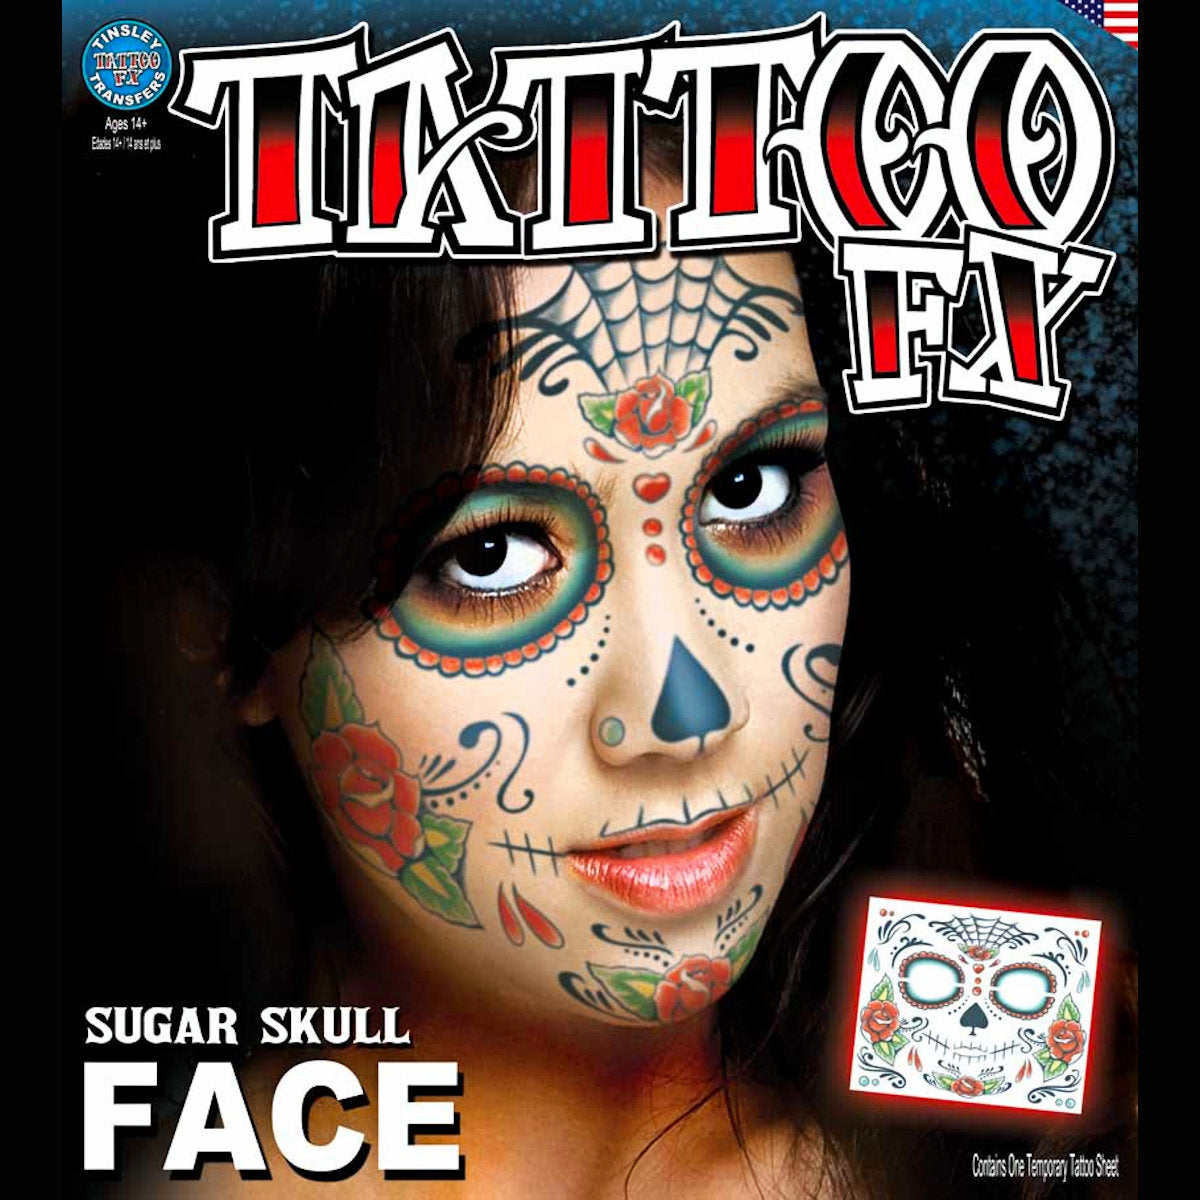 DOD Sugar Skull Full Face Temporary Tattoo Tinsley Halloween Special FX Make up